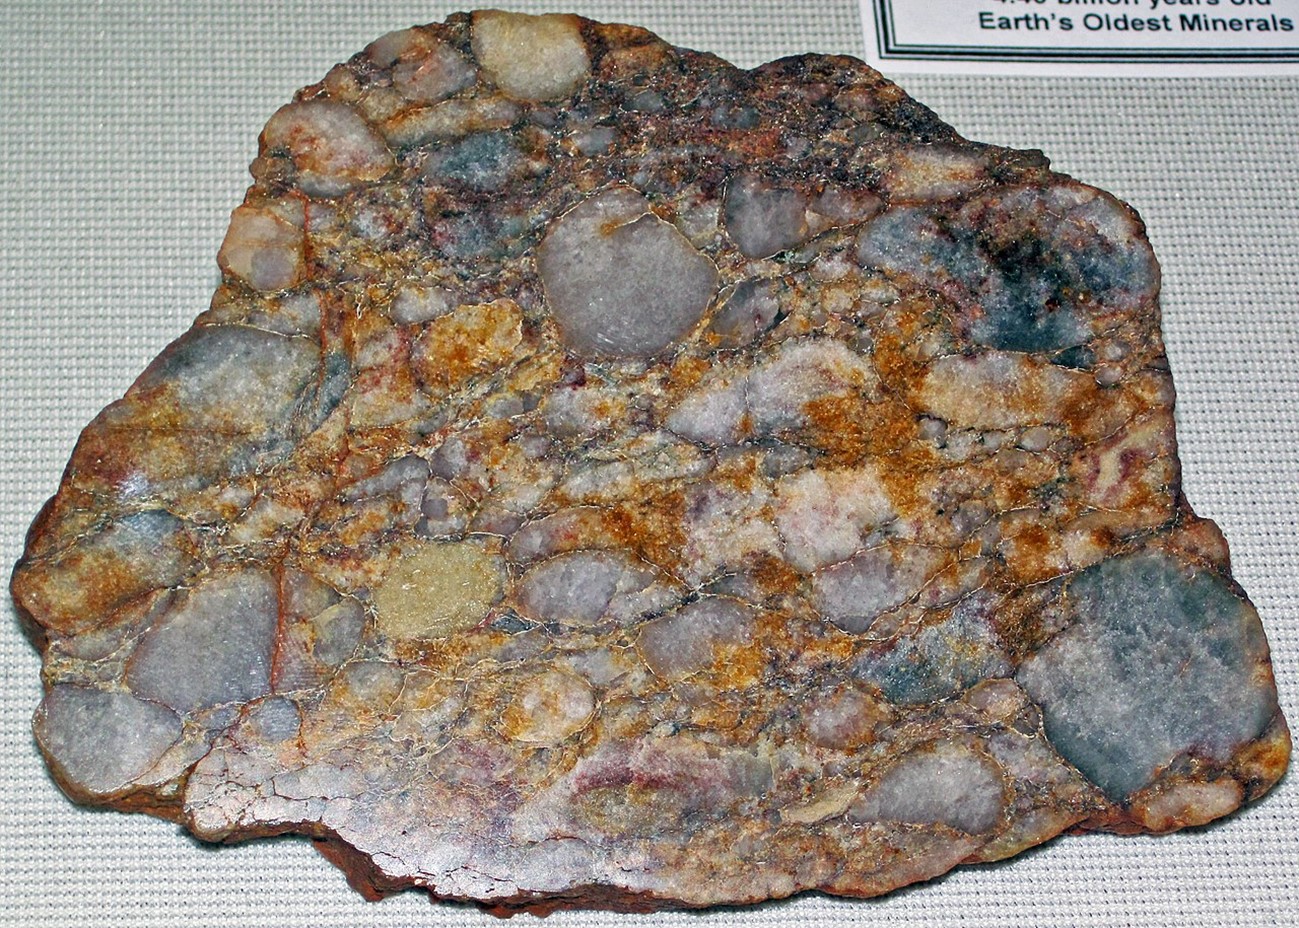 specimen of Archaean quartz-pebble metaconglomerate